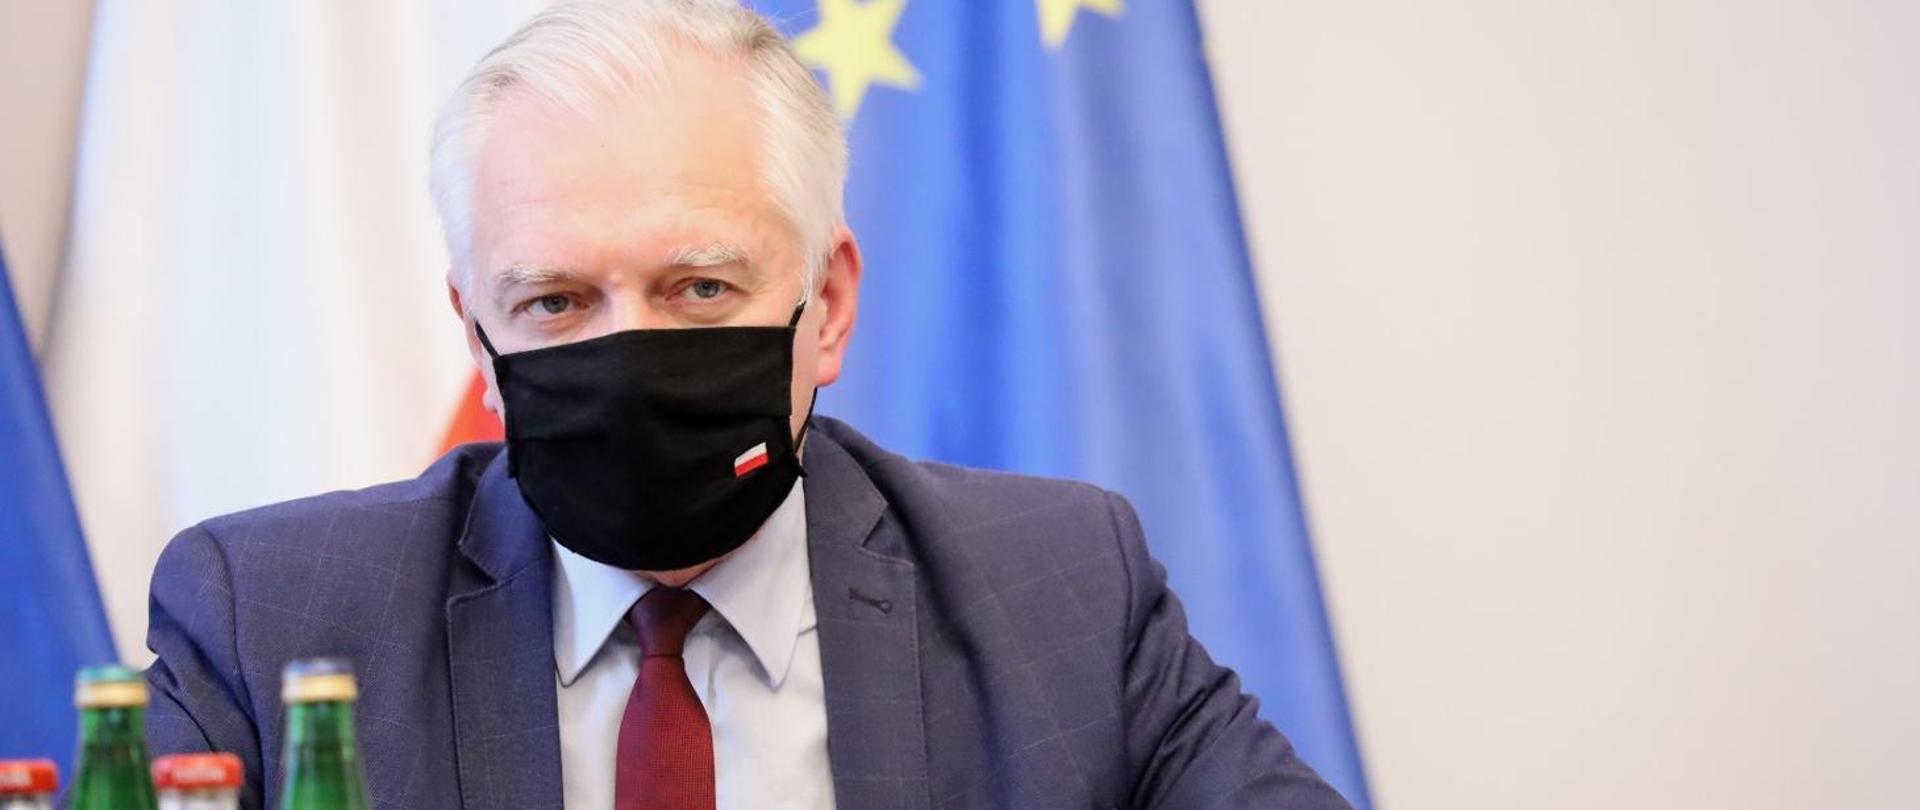 Deputy Prime Minister Jaroslaw Gowin wearing a mask